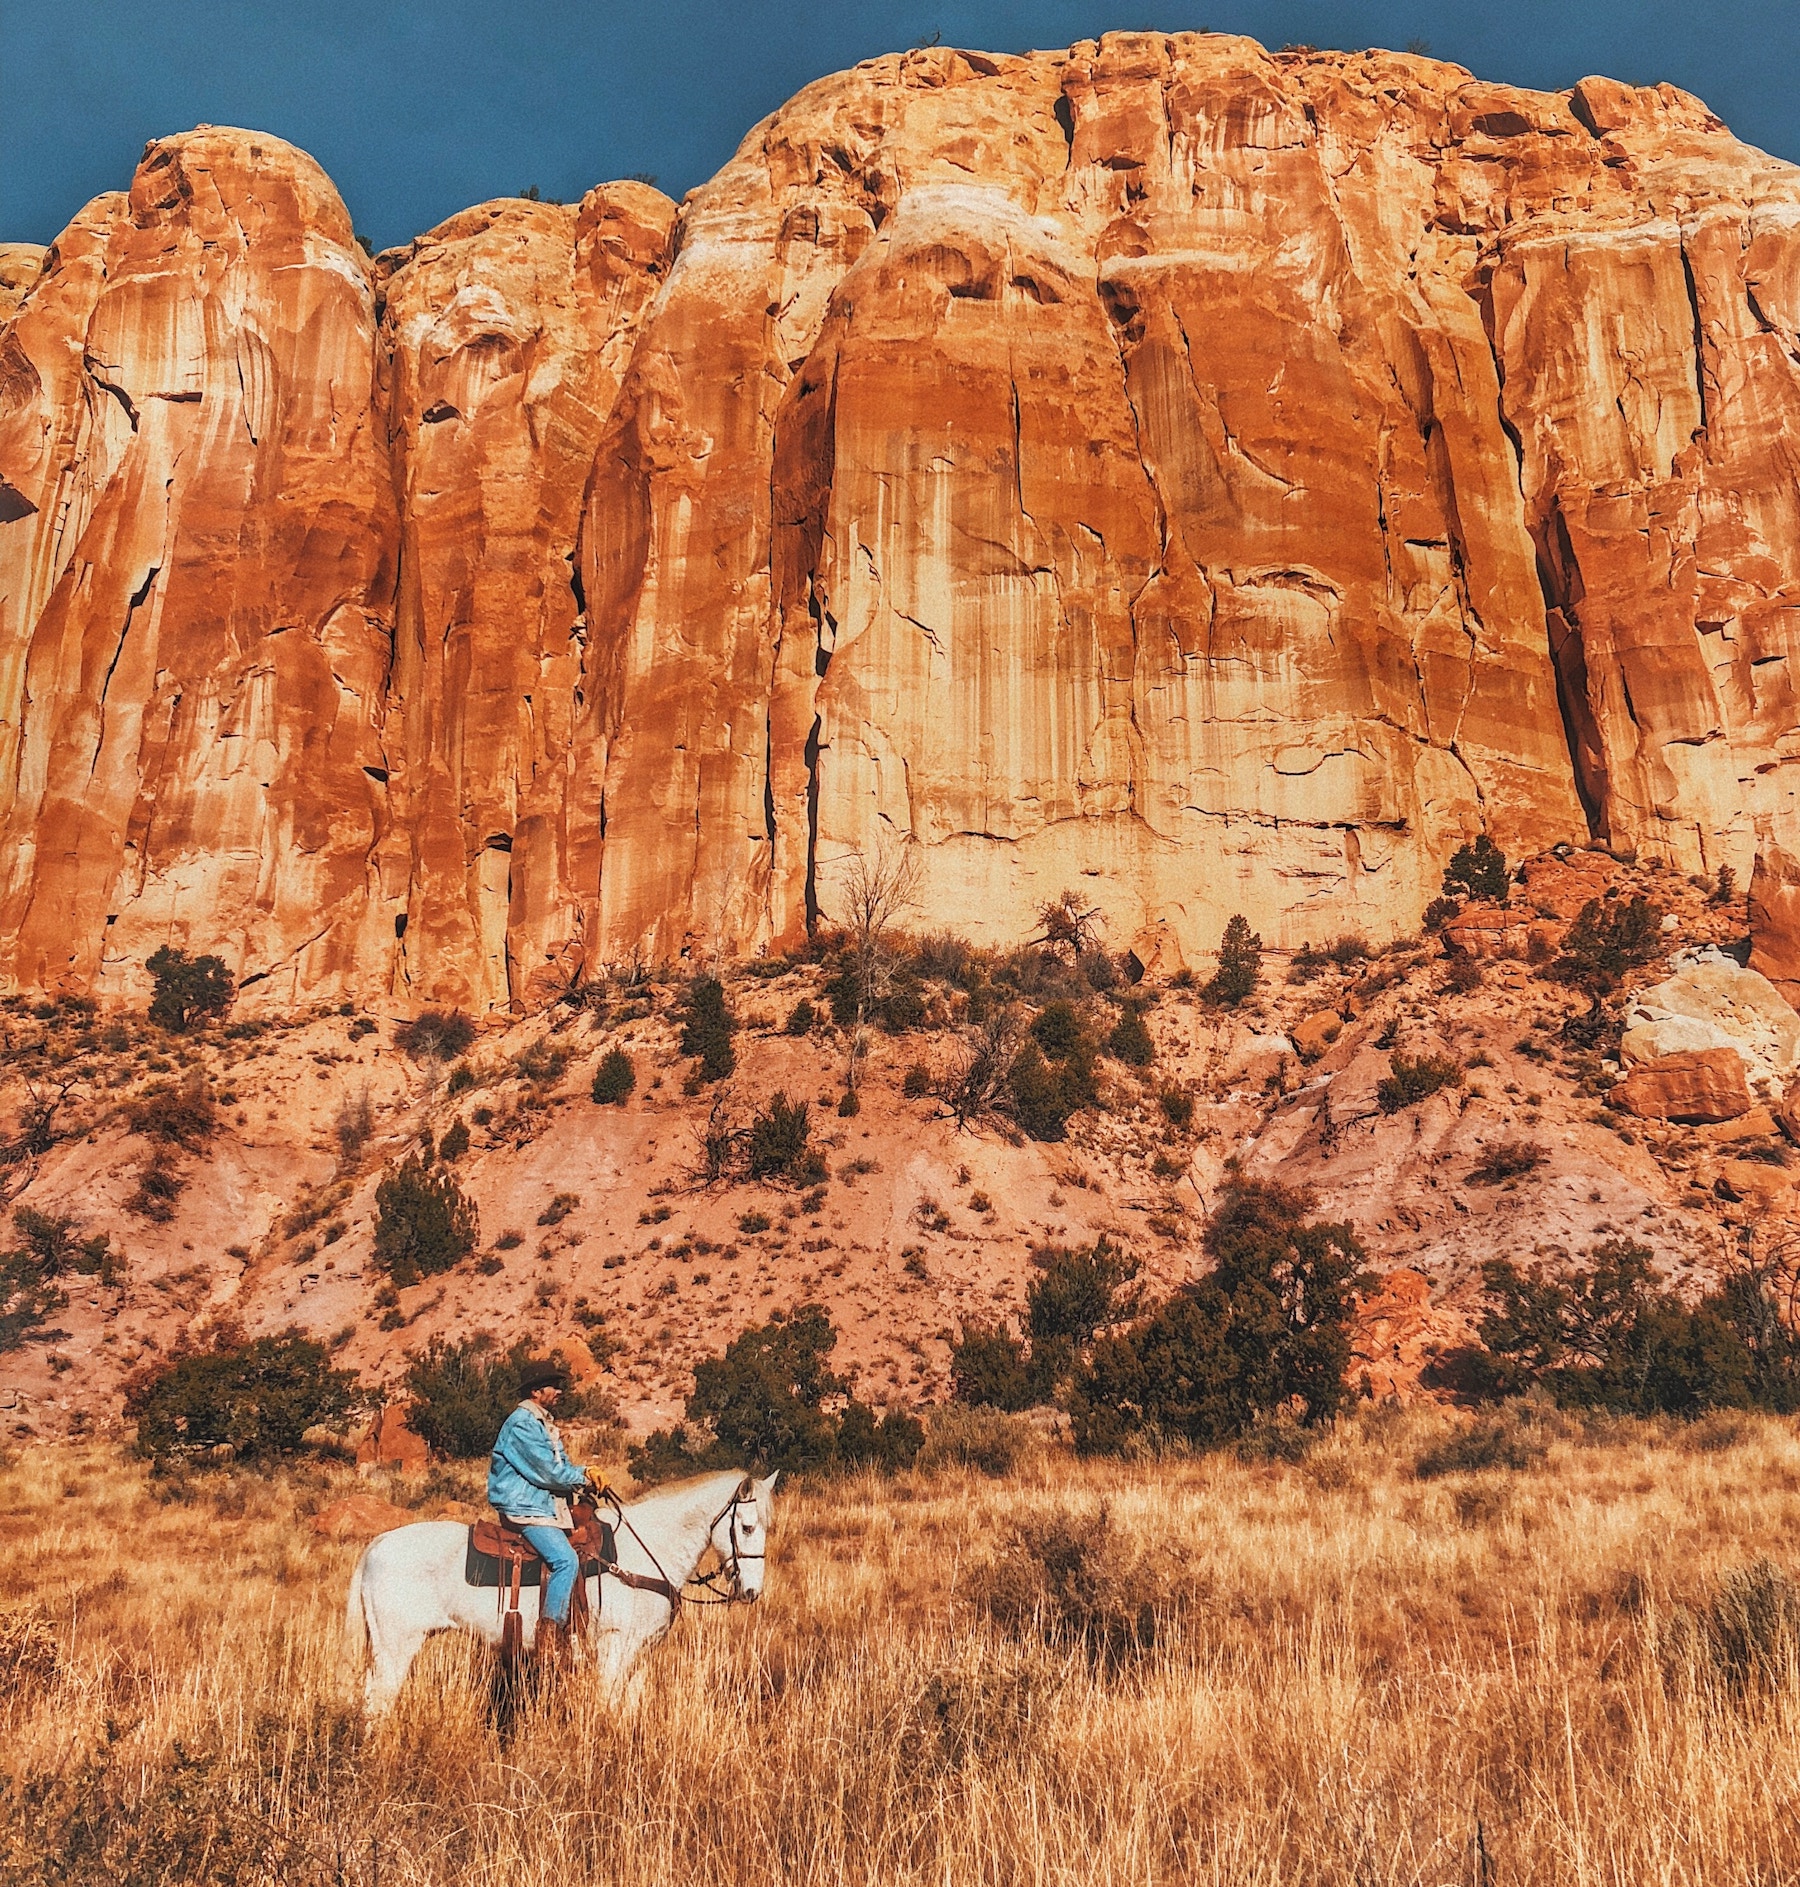 Man on horse outside, desert landscape